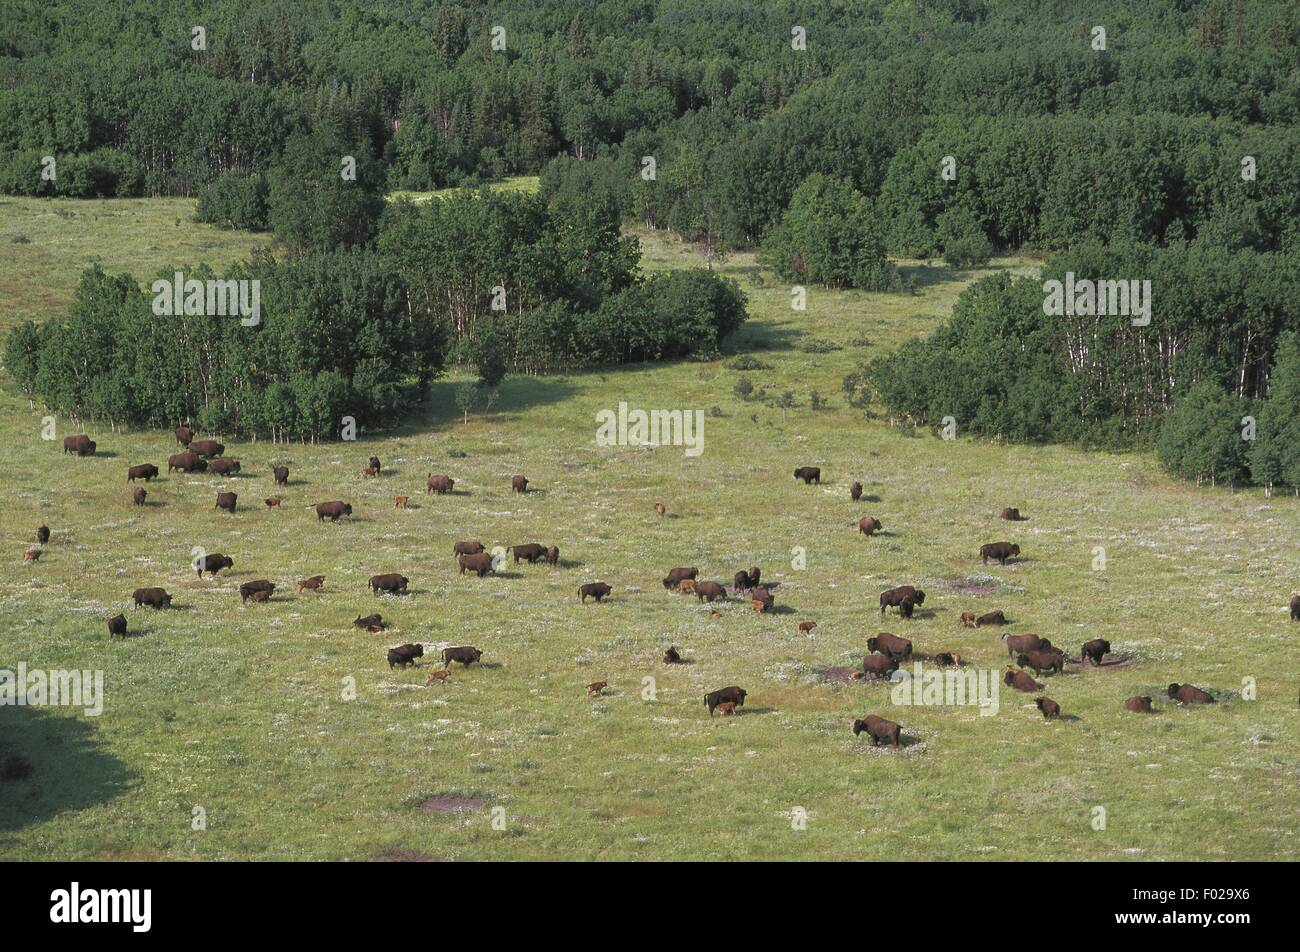 Le Canada, les Territoires du Nord-Ouest du Parc national Wood Buffalo (Liste du patrimoine mondial de l'UNESCO, 1983). Bisons, vue aérienne Banque D'Images